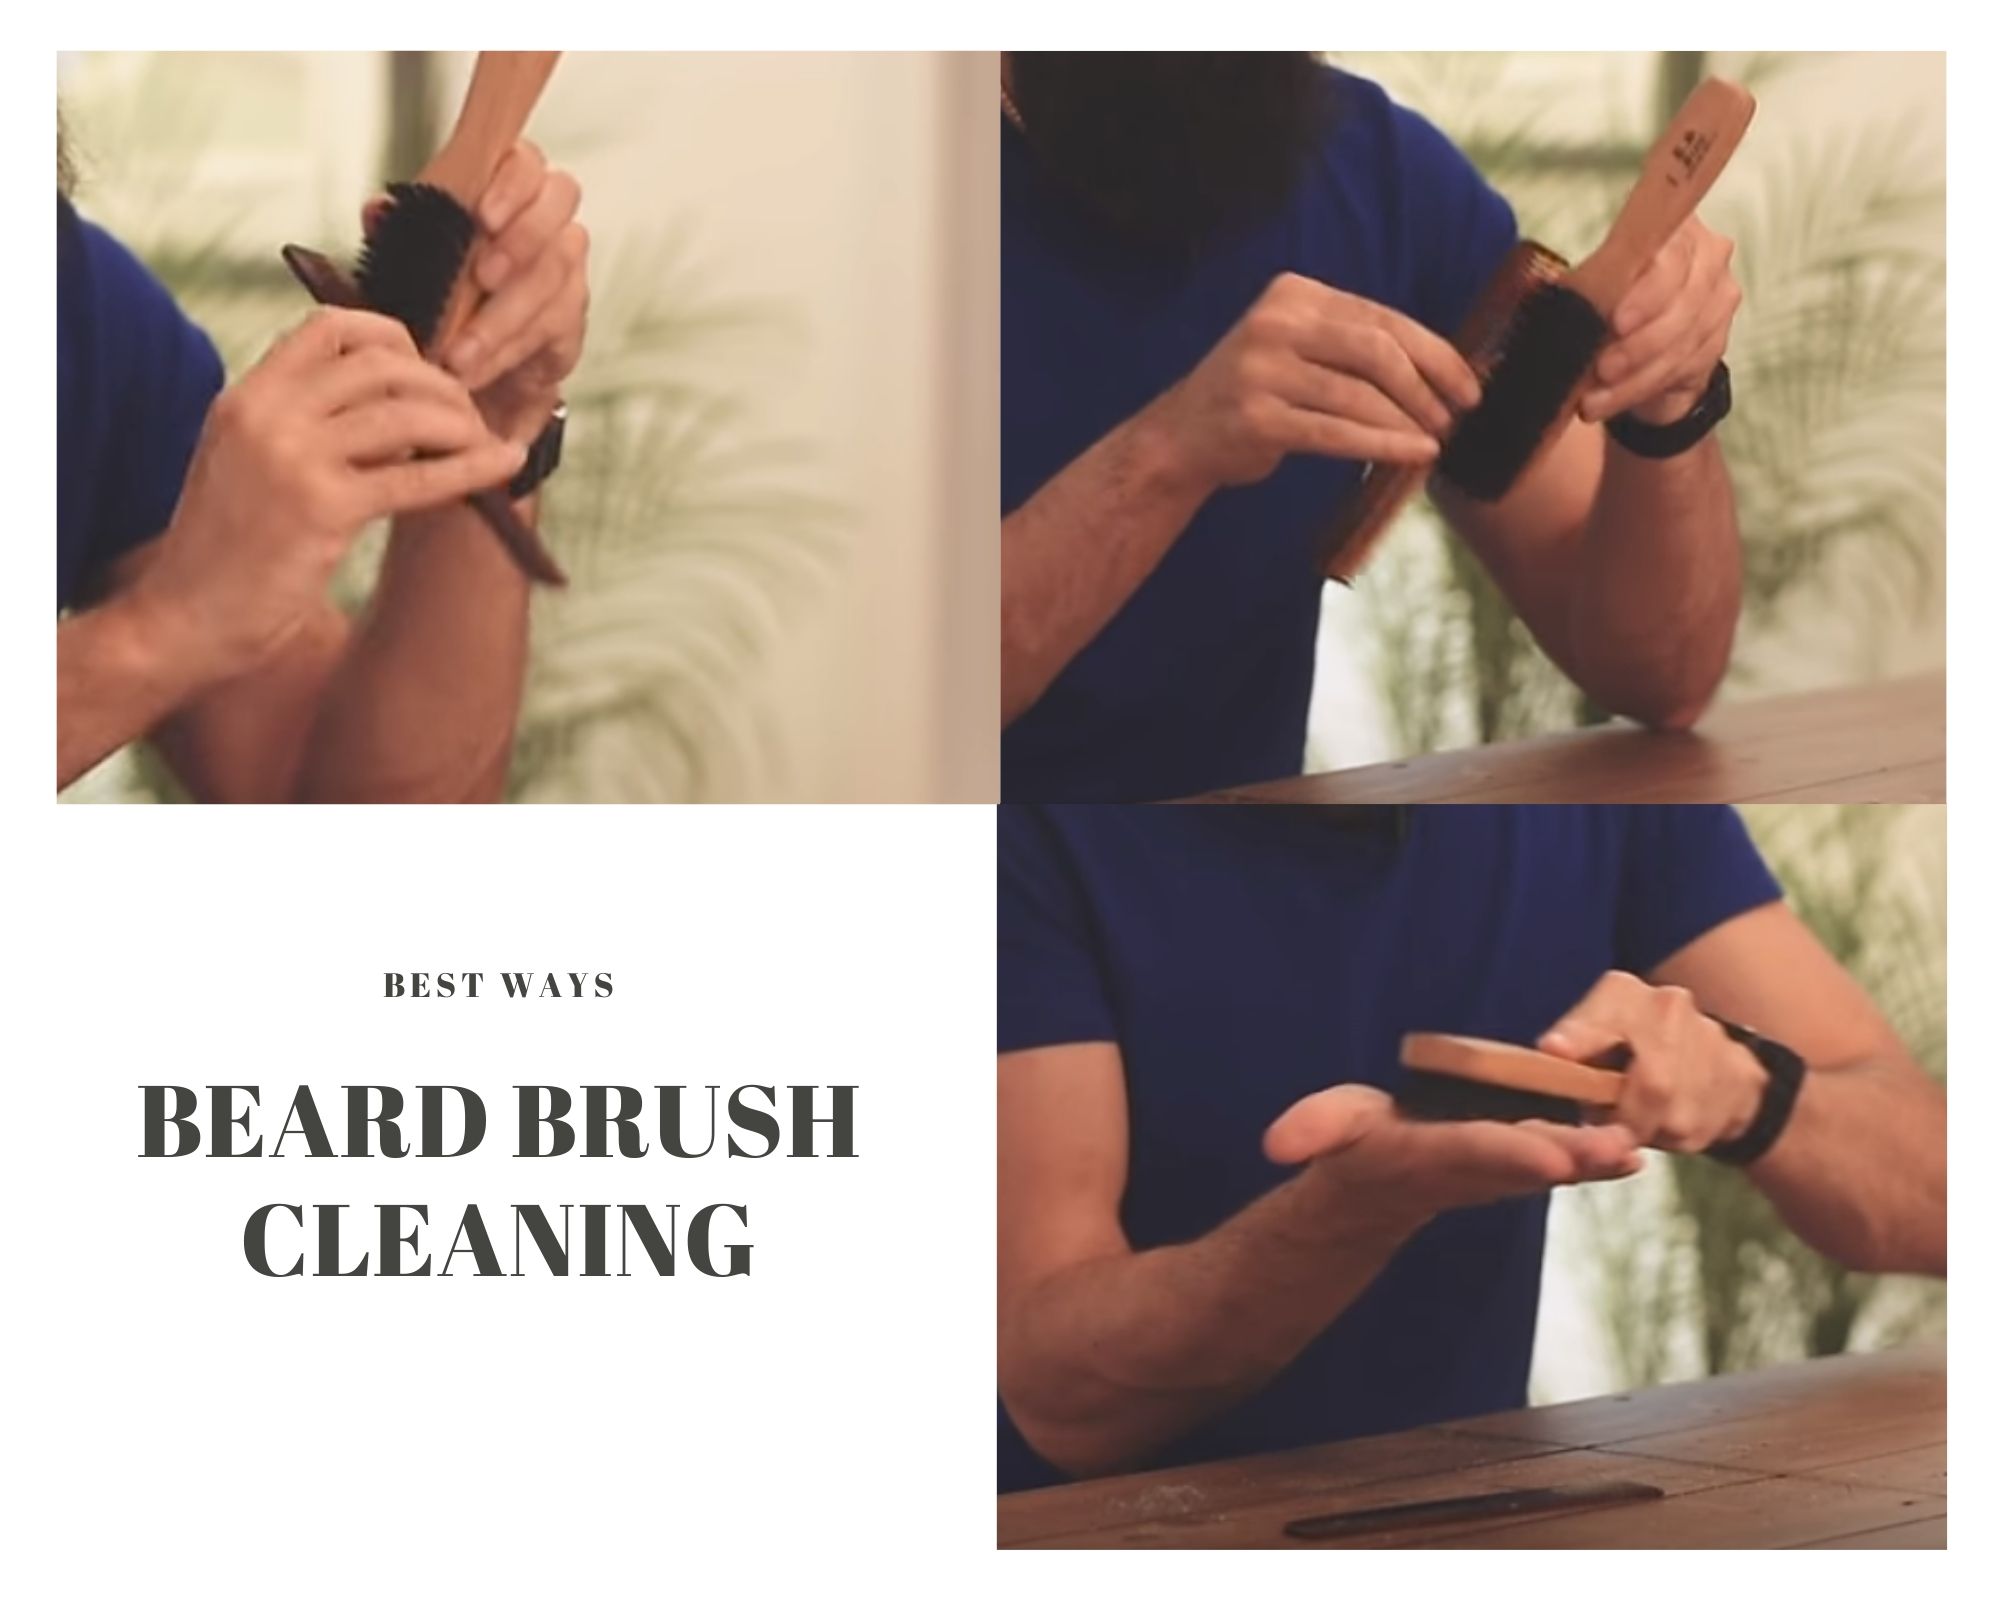 Beard BRUSH CLEANING